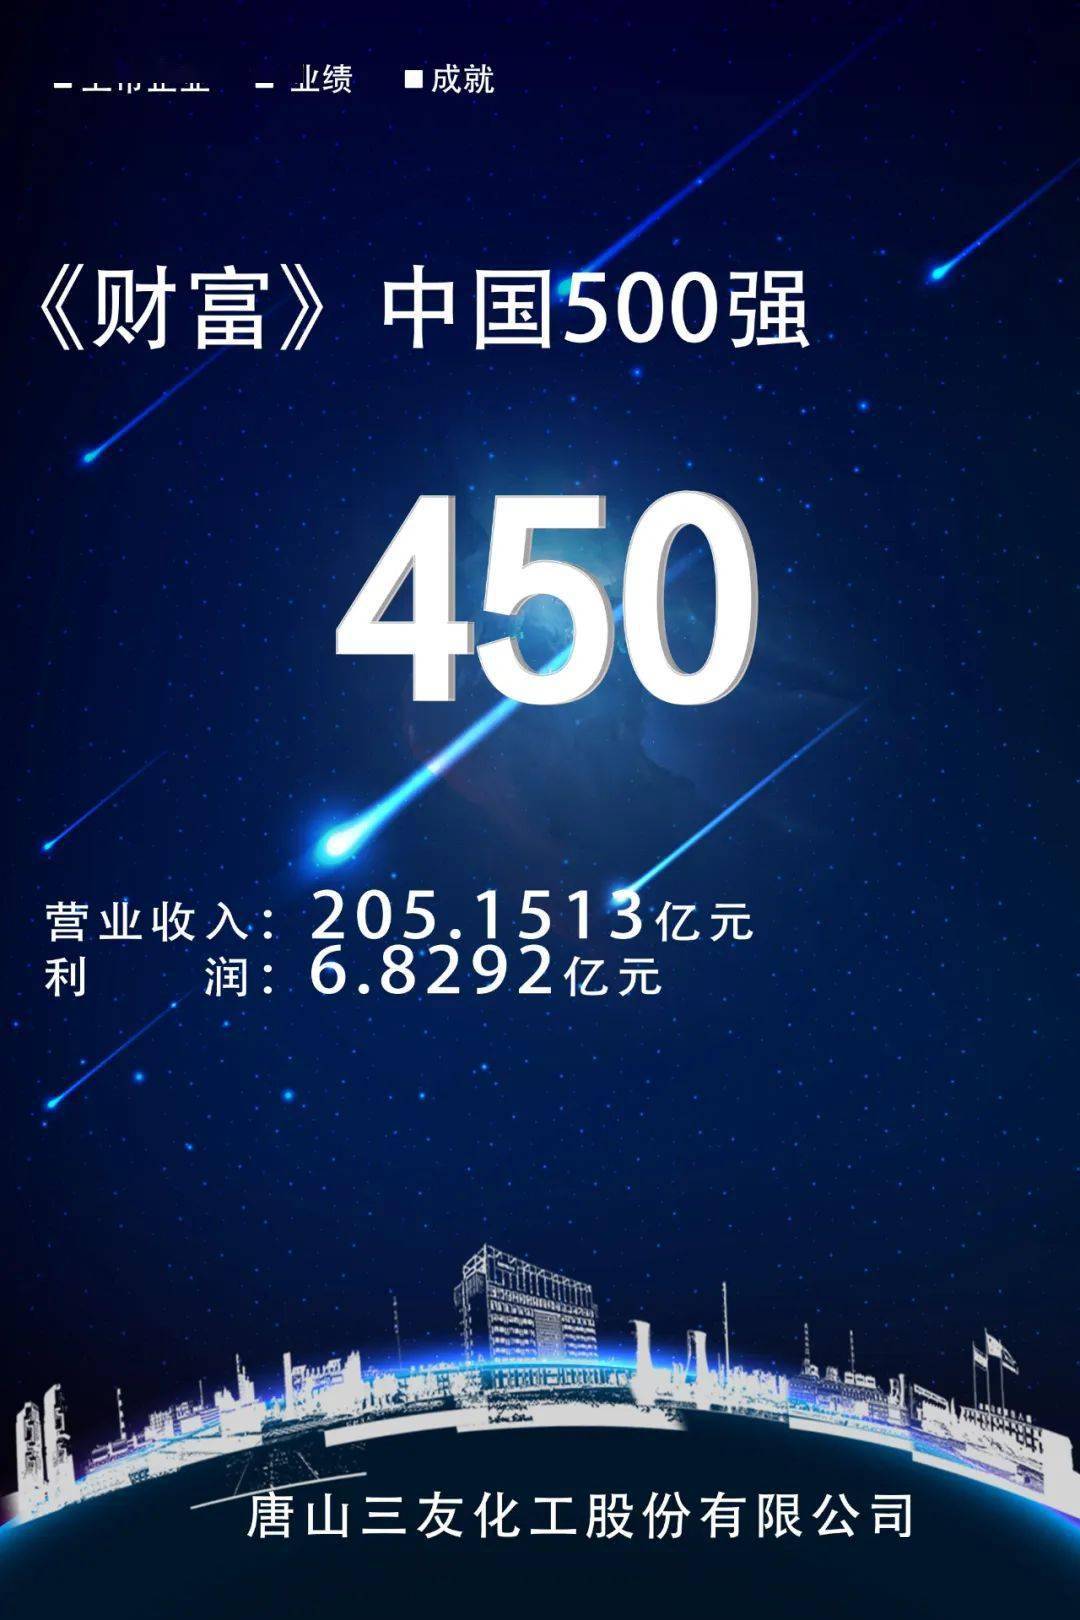 近日,财富中文网发布了2020《财富》中国500强名单